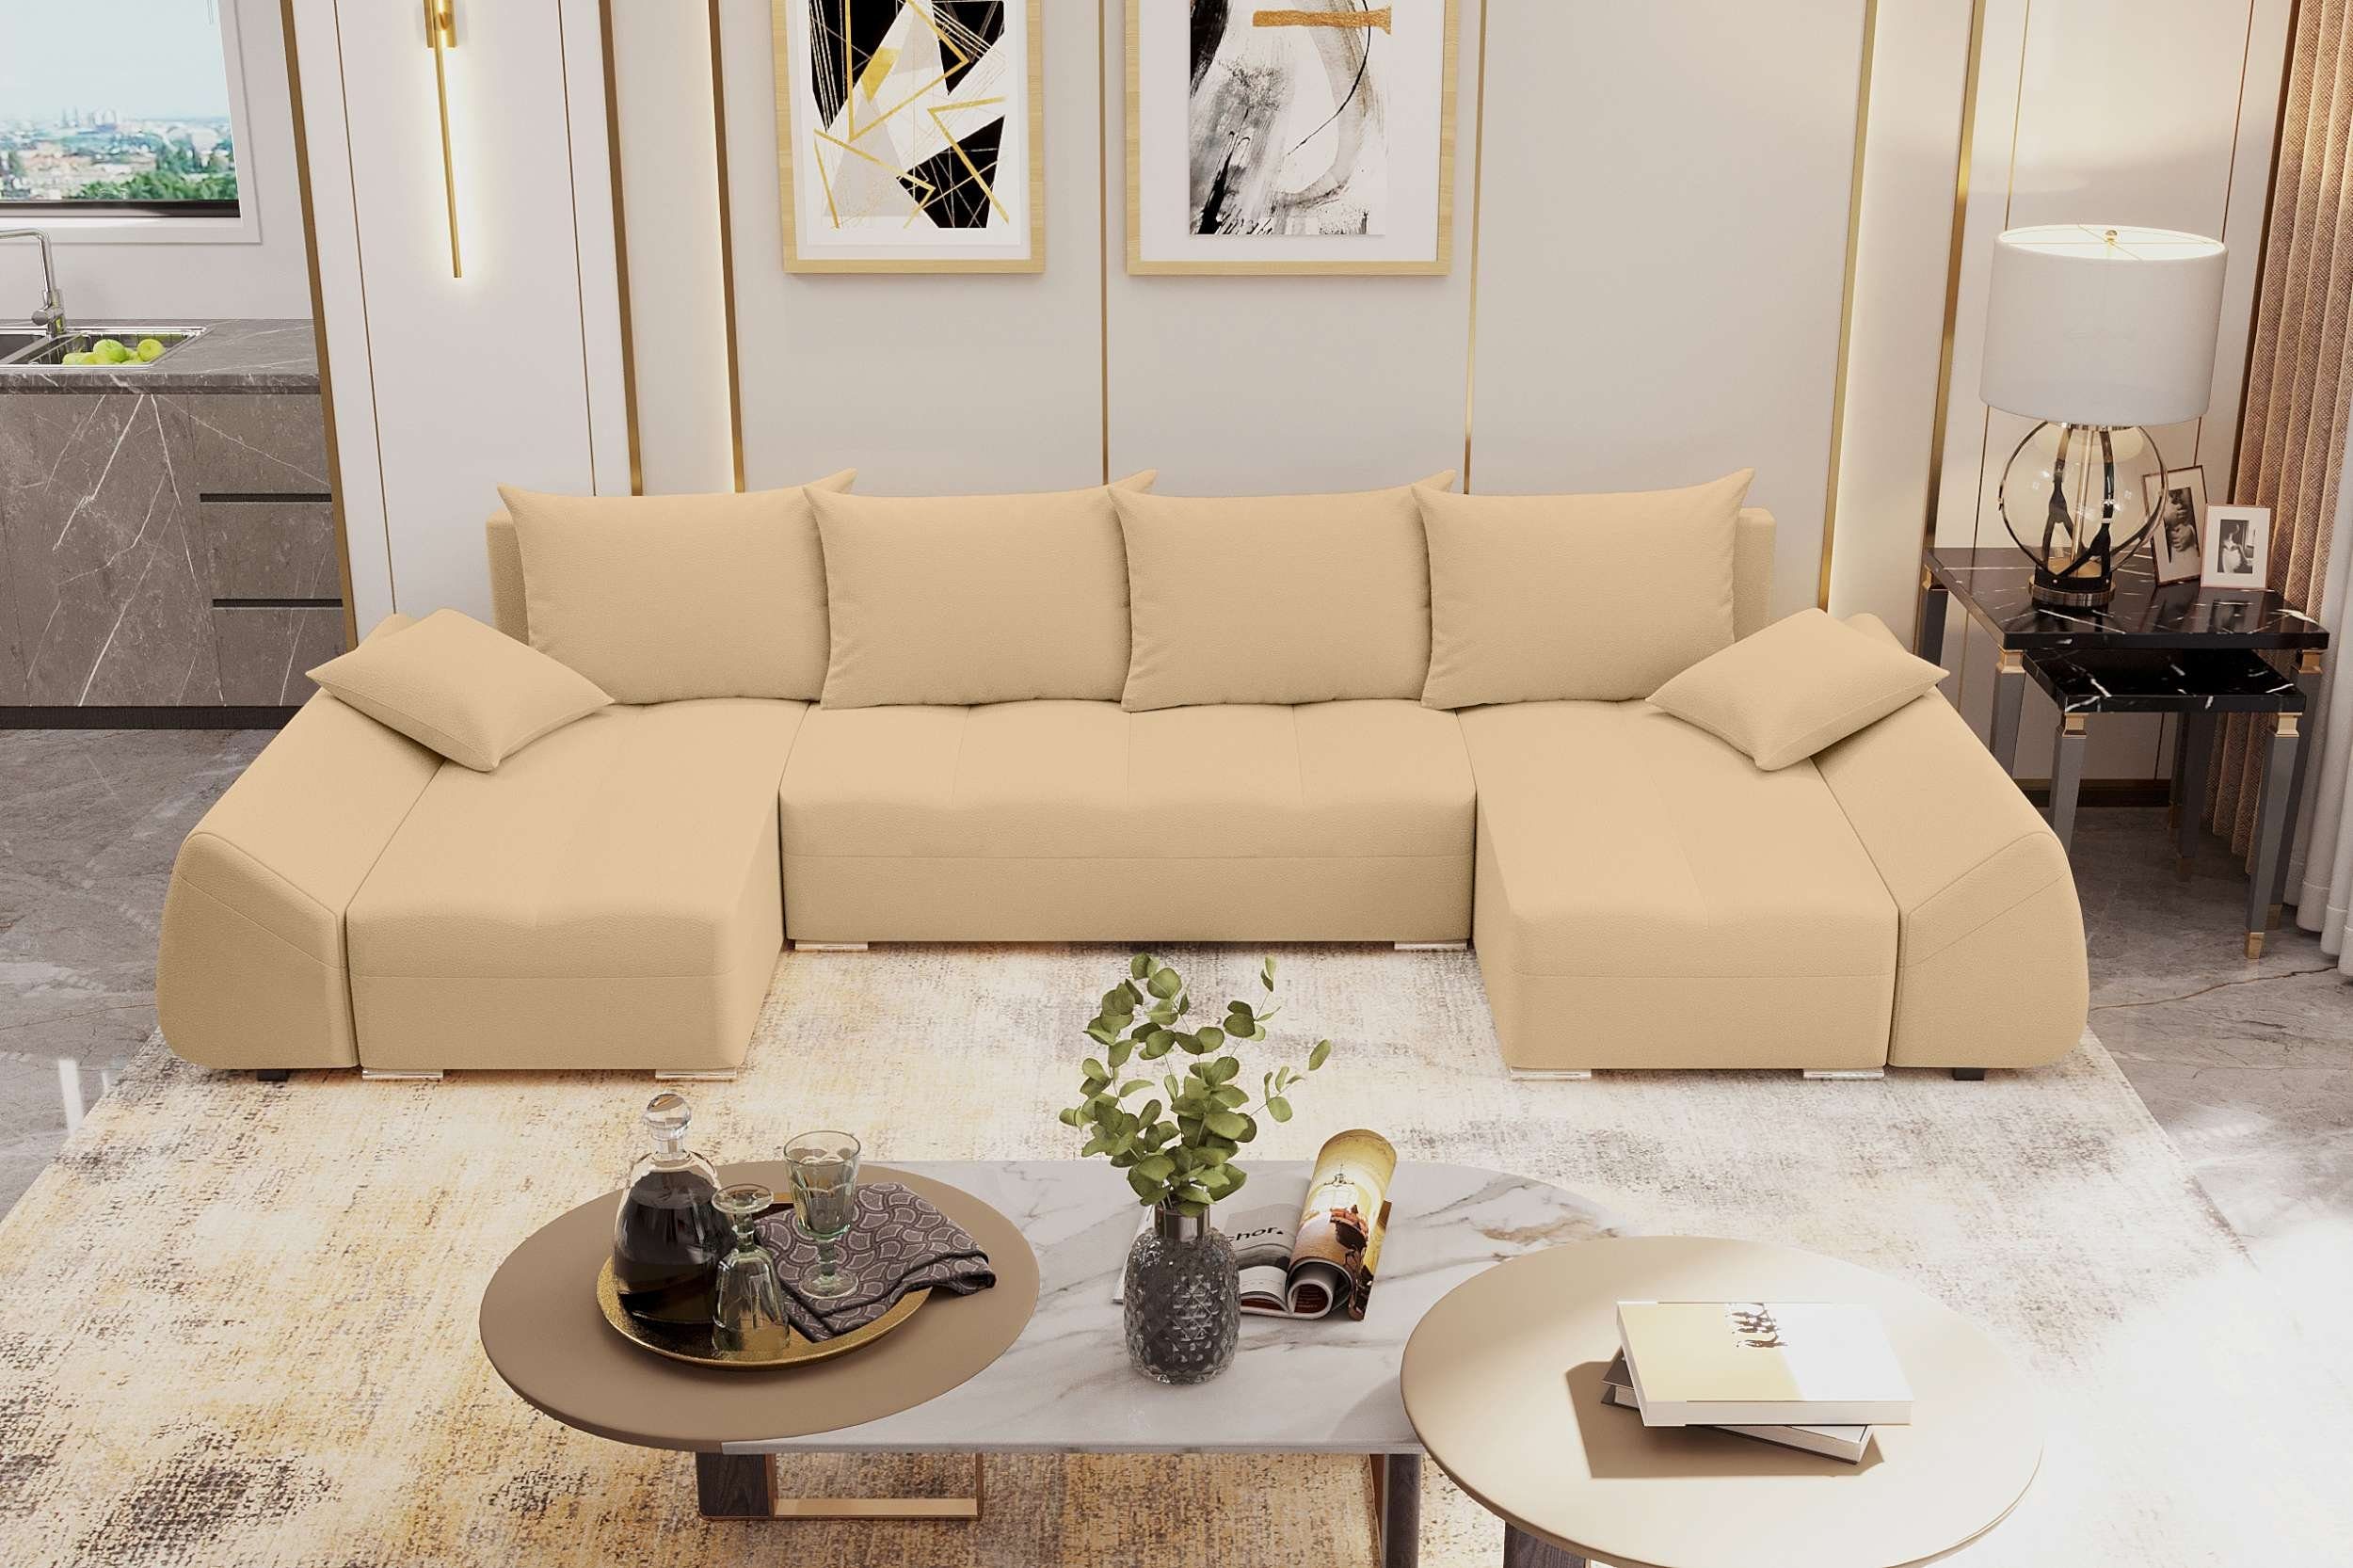 mit mit Stylefy U-Form, Wohnlandschaft Sitzkomfort, Sofa, Eckcouch, Bettfunktion, Design Modern Madeira, Bettkasten,